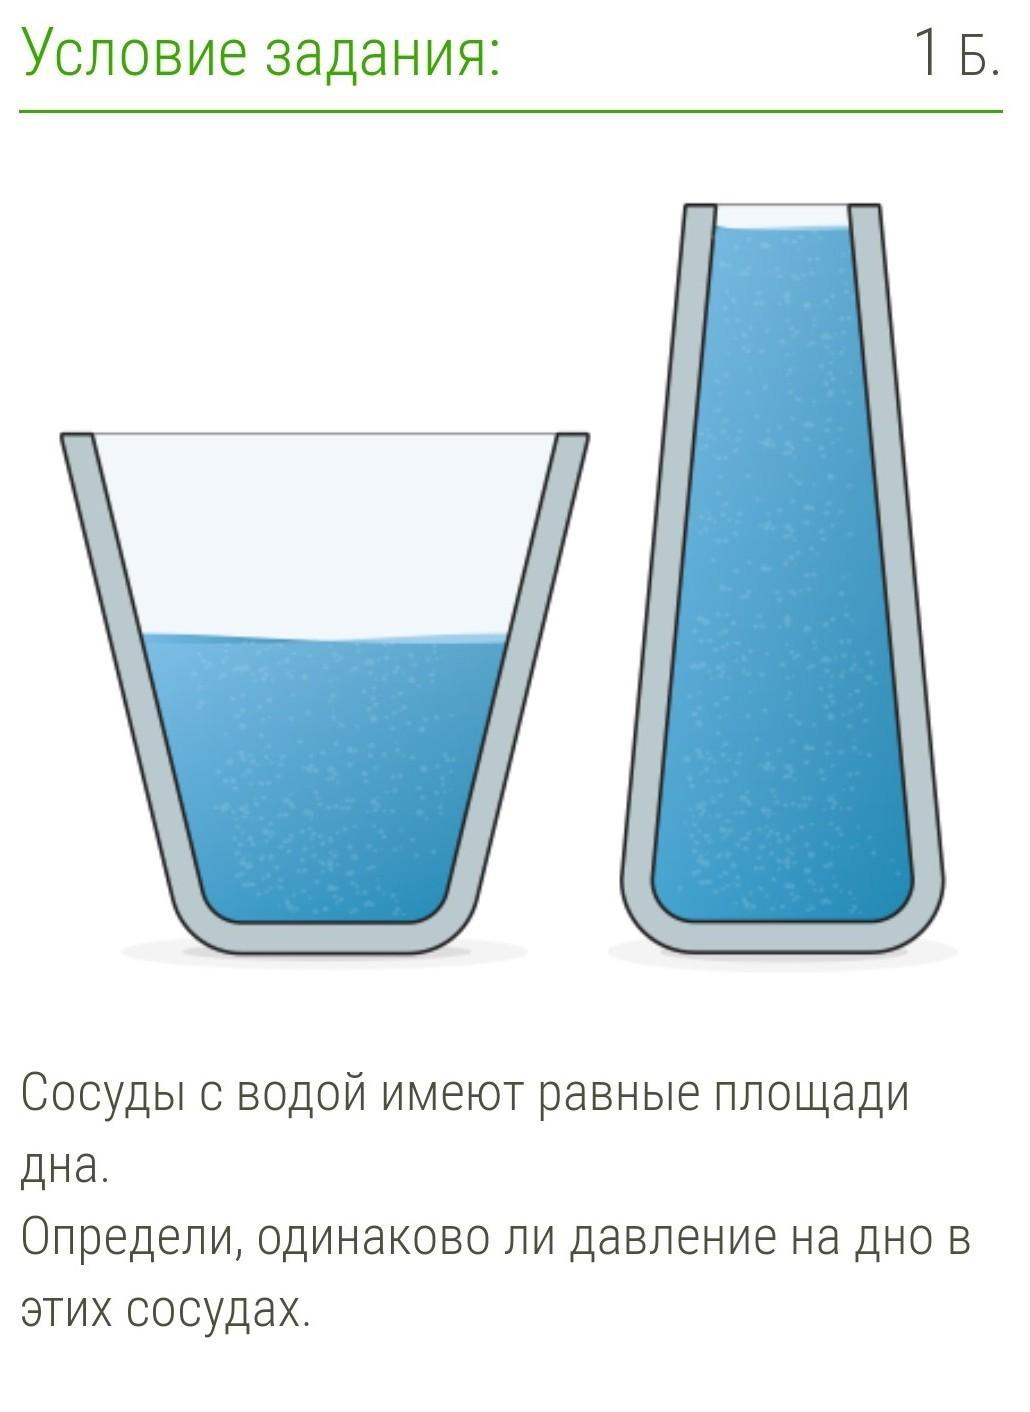 Сосуд с водой имеет форму изображенную. Сосуд с водой. Площадь дна сосуда. Сосуды с водой имеют одинаковые площади дна. Сосуды с водой имеют равные площади.